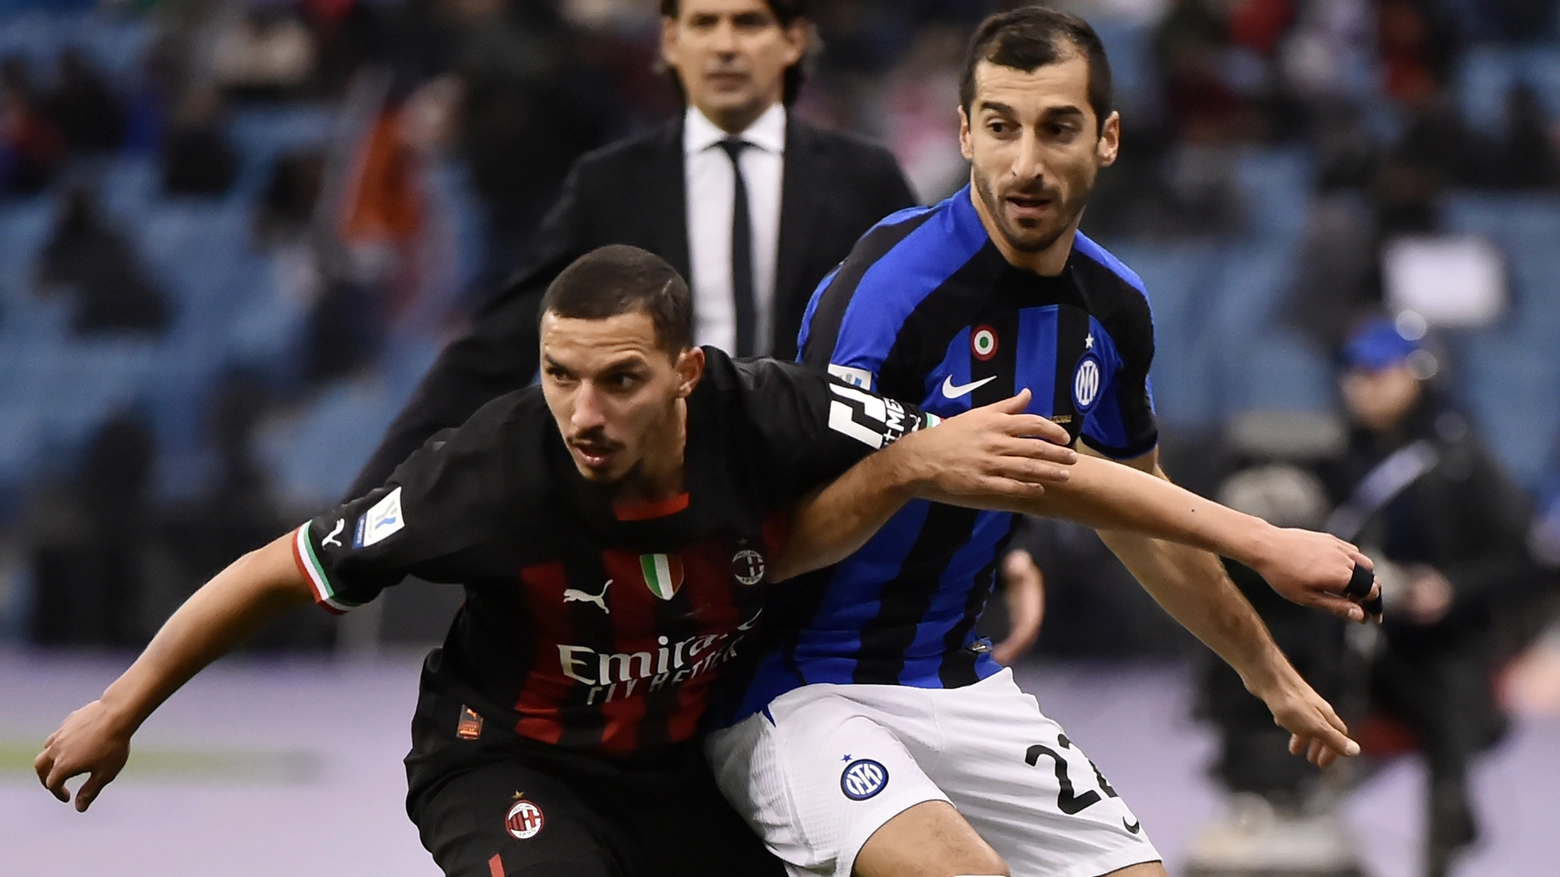 Milan-Inter, euroderby di Champions League in diretta. Probabili formazioni e ultimissime